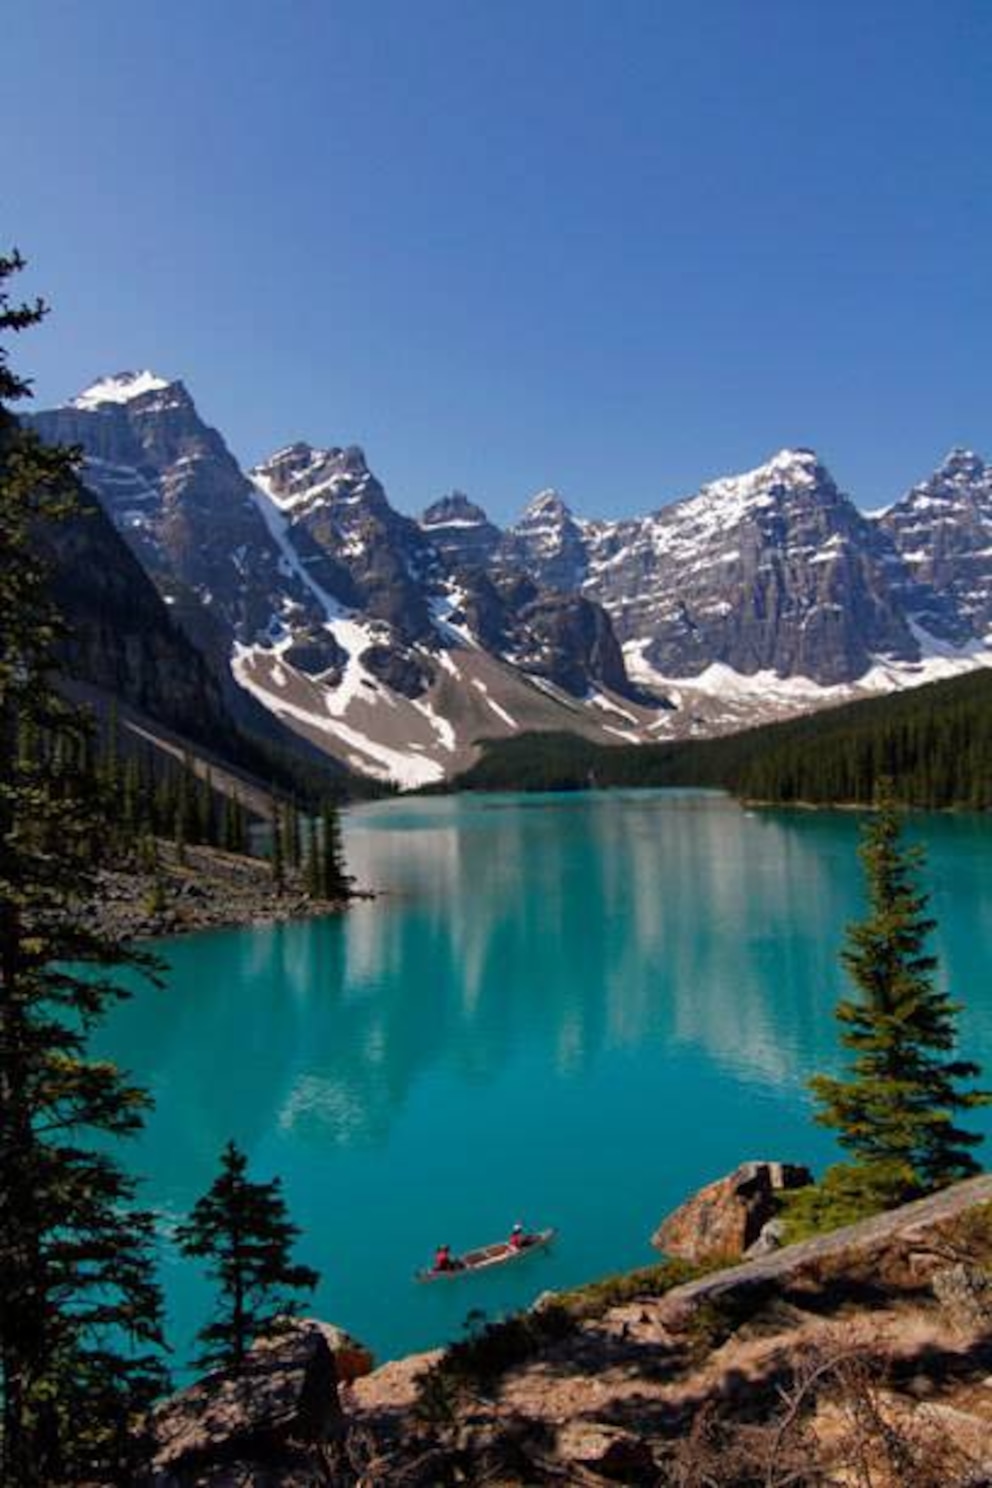 Berge, Seen, Wälder: Die Landschaften in Kanada sind spektakulär. Hier im Bild: ein See im Banff Nationalpark in British Columbia